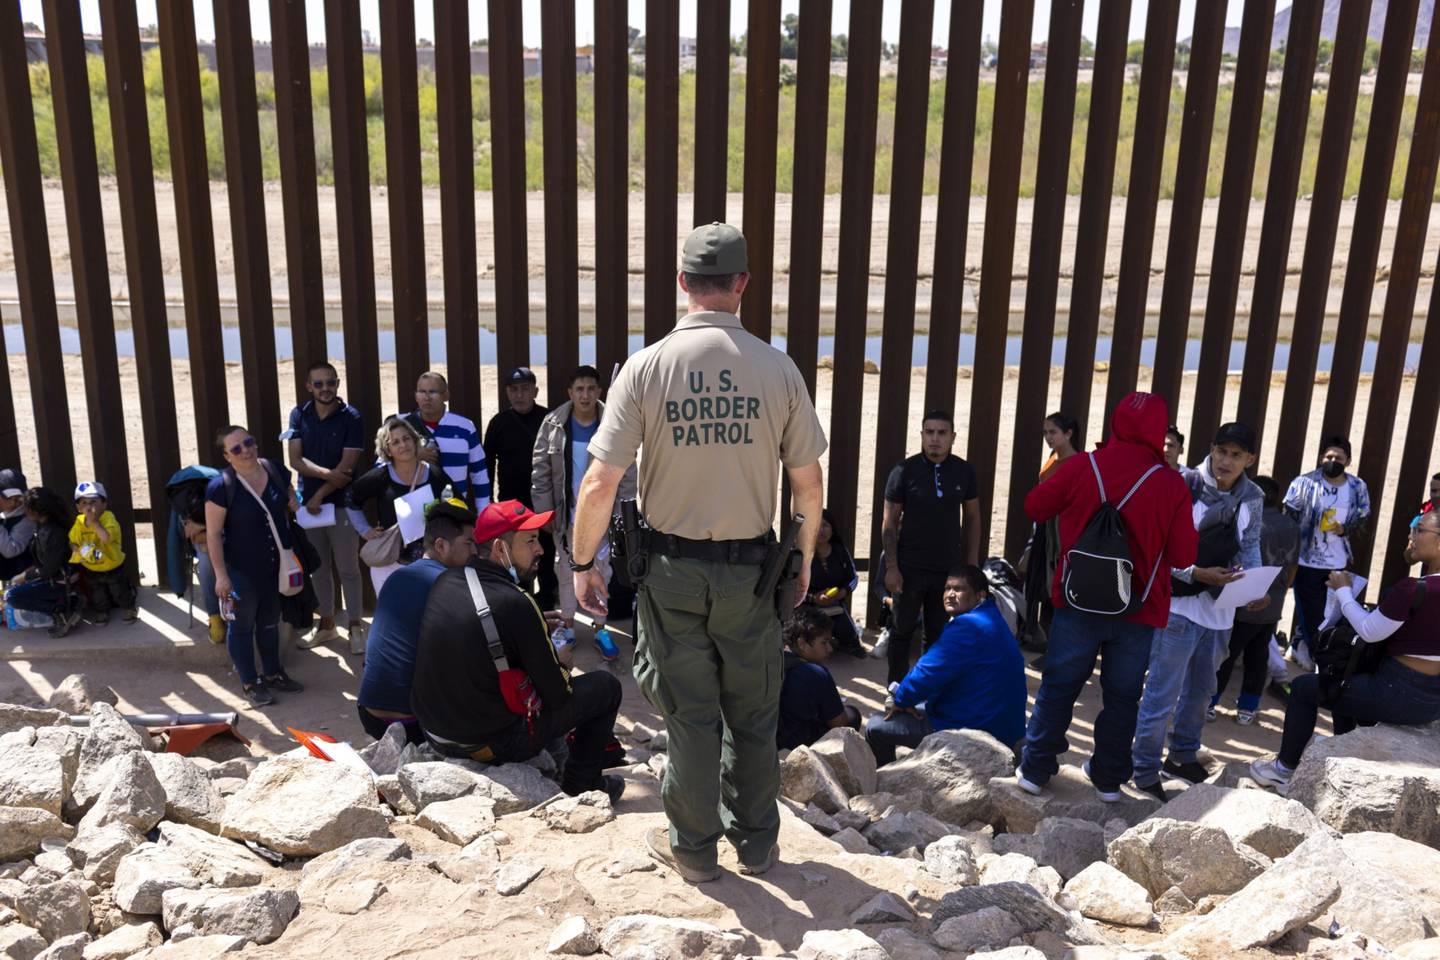 Un agente de la Patrulla Fronteriza de EE.UU. habla con los migrantes que buscan asilo después de cruzar la frontera entre México y EE.UU. en Yuma, Arizona, EE.UU. el martes 3 de mayo de 2022. Fotógrafo: Nicolo Filippo Rosso/Bloomberg